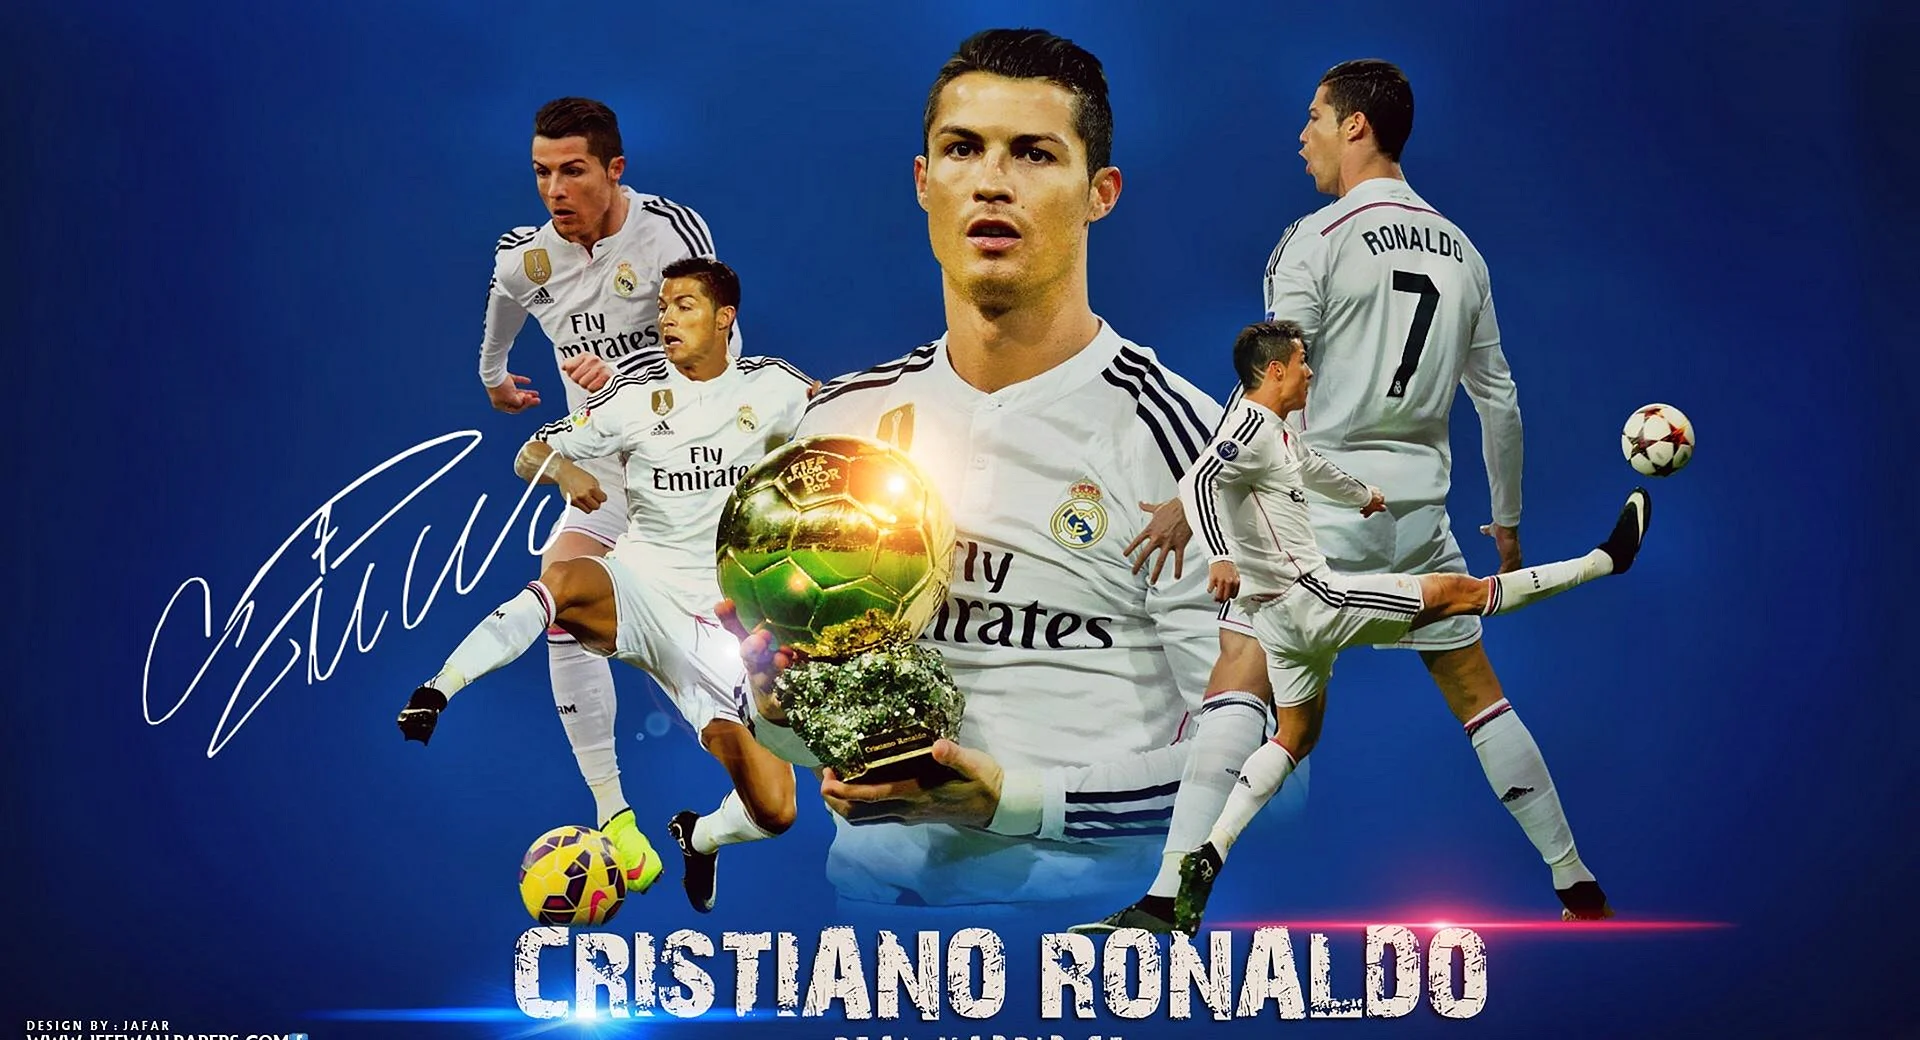 Cristiano Ronaldo Poster Wallpaper